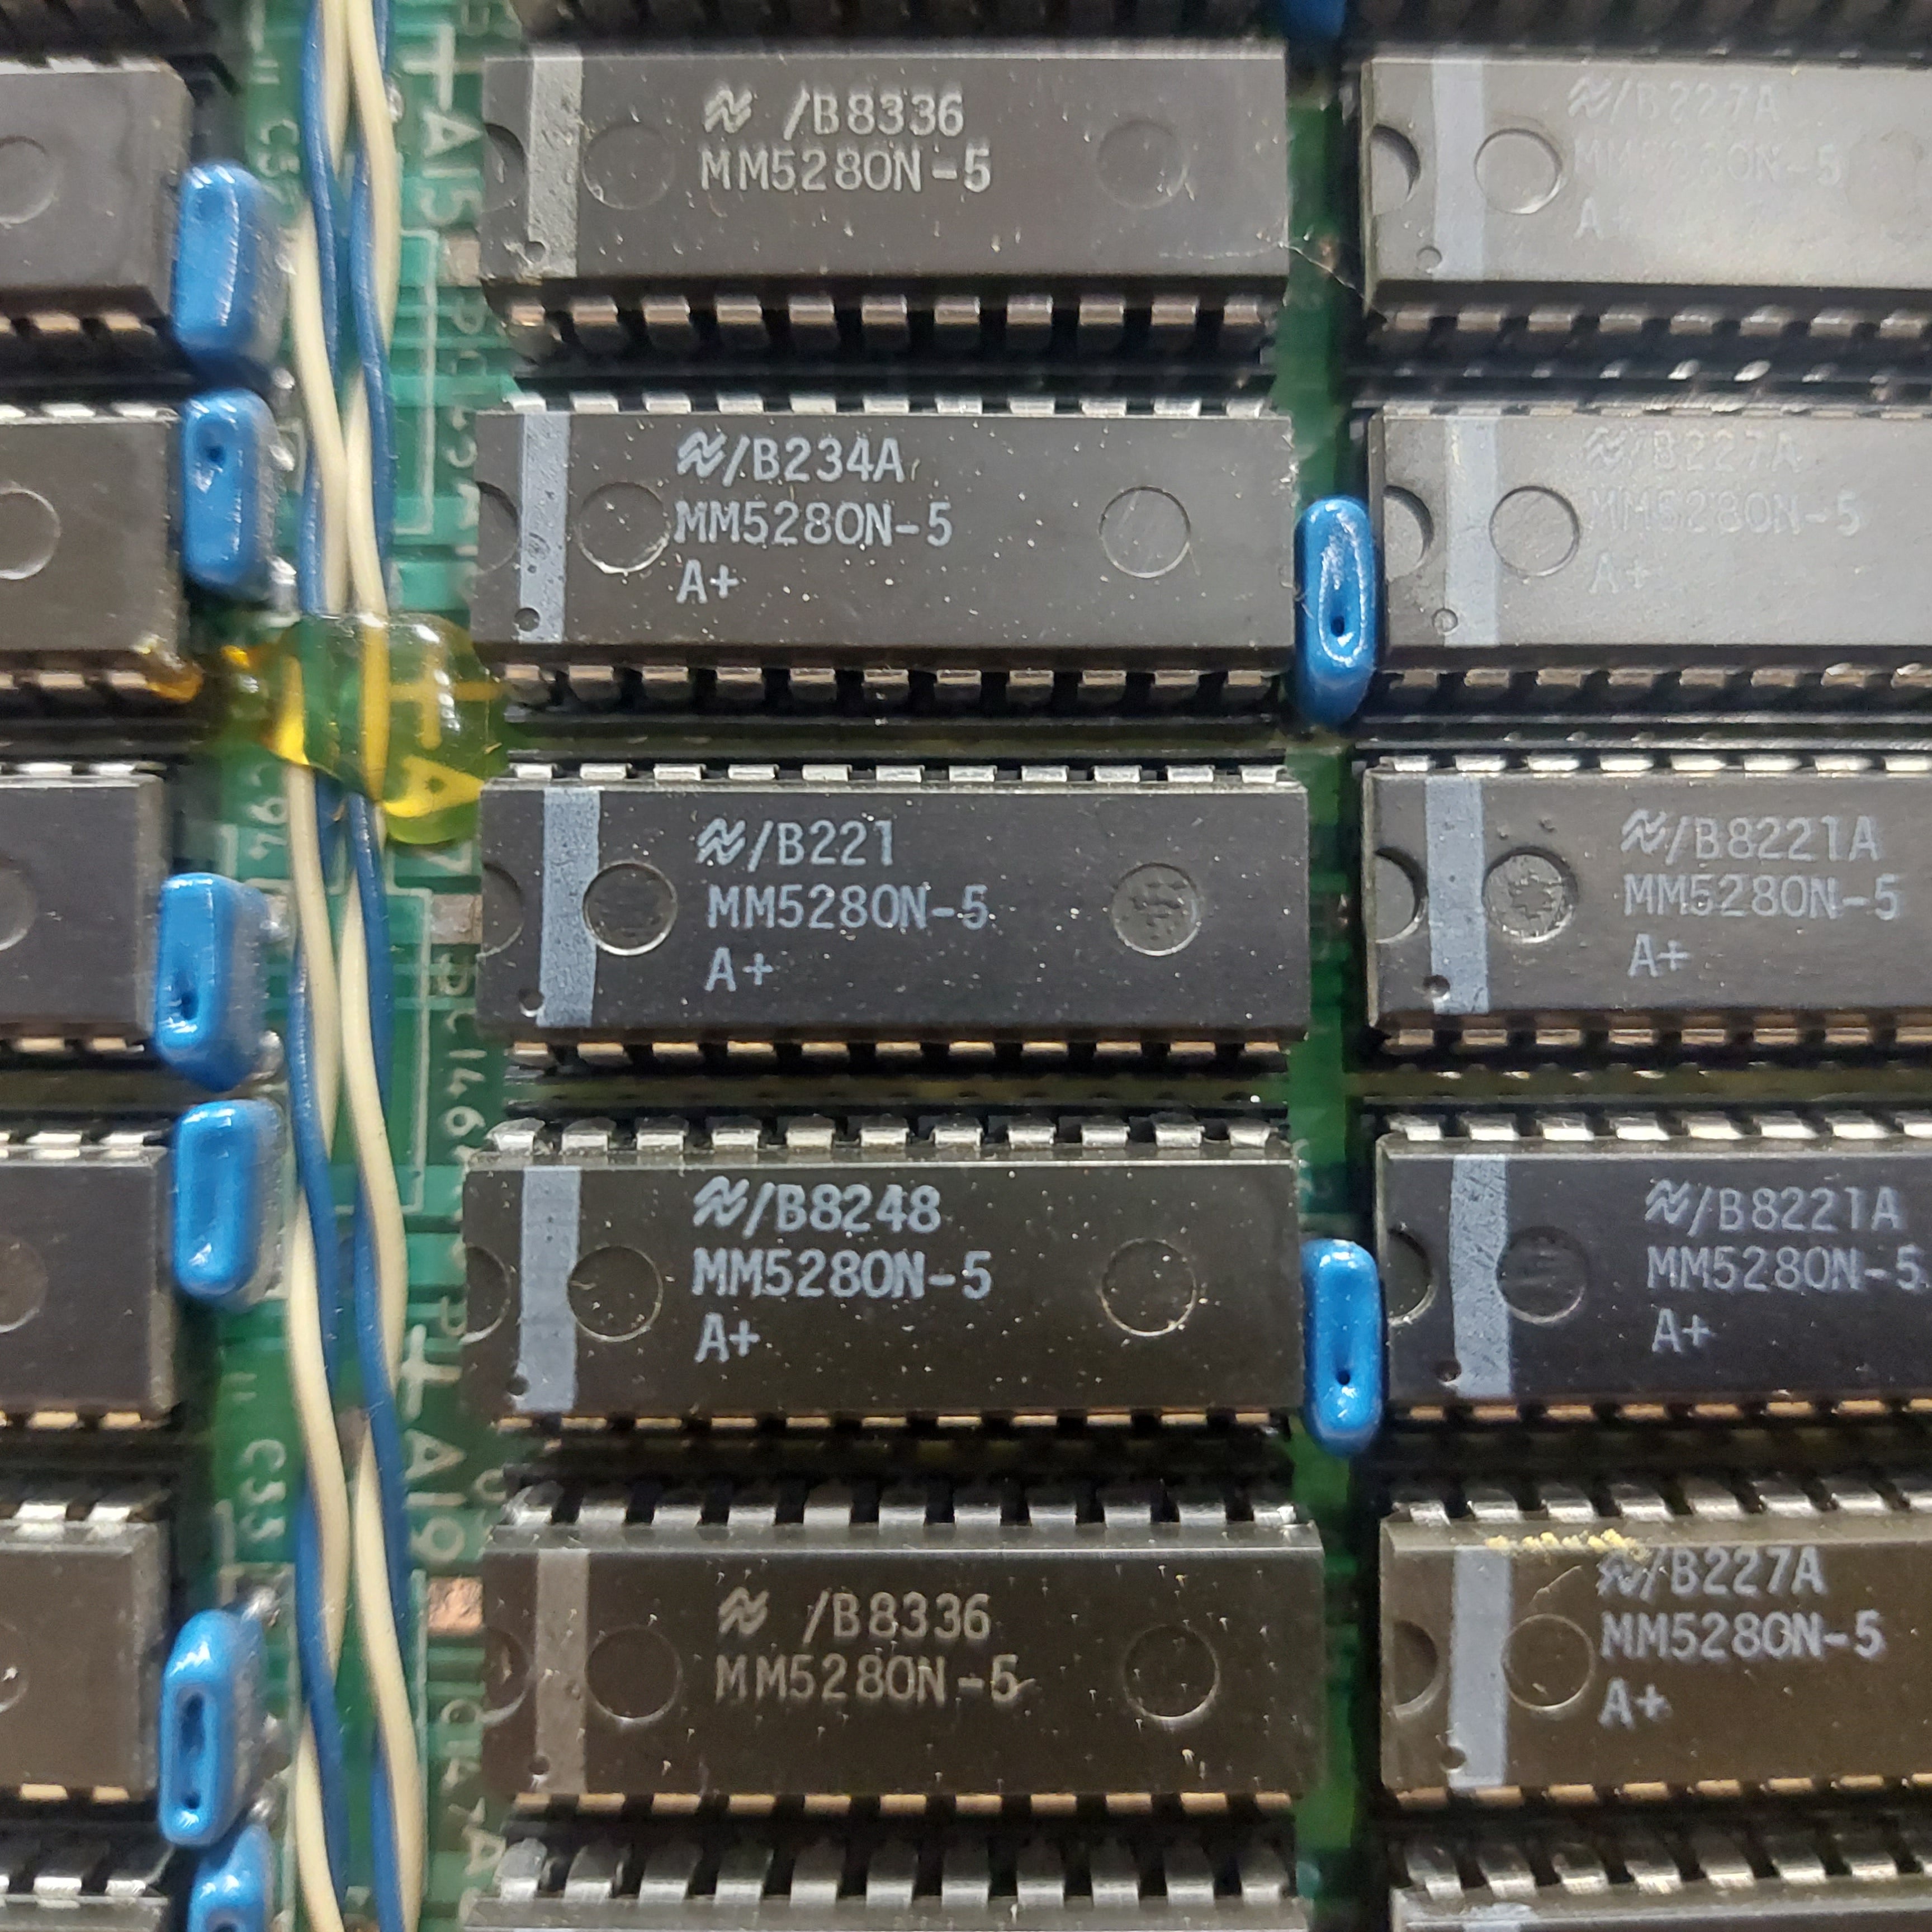 (132) MM5280N-5 General Purpose Dynamic RAM Still in Sockets on Board Used